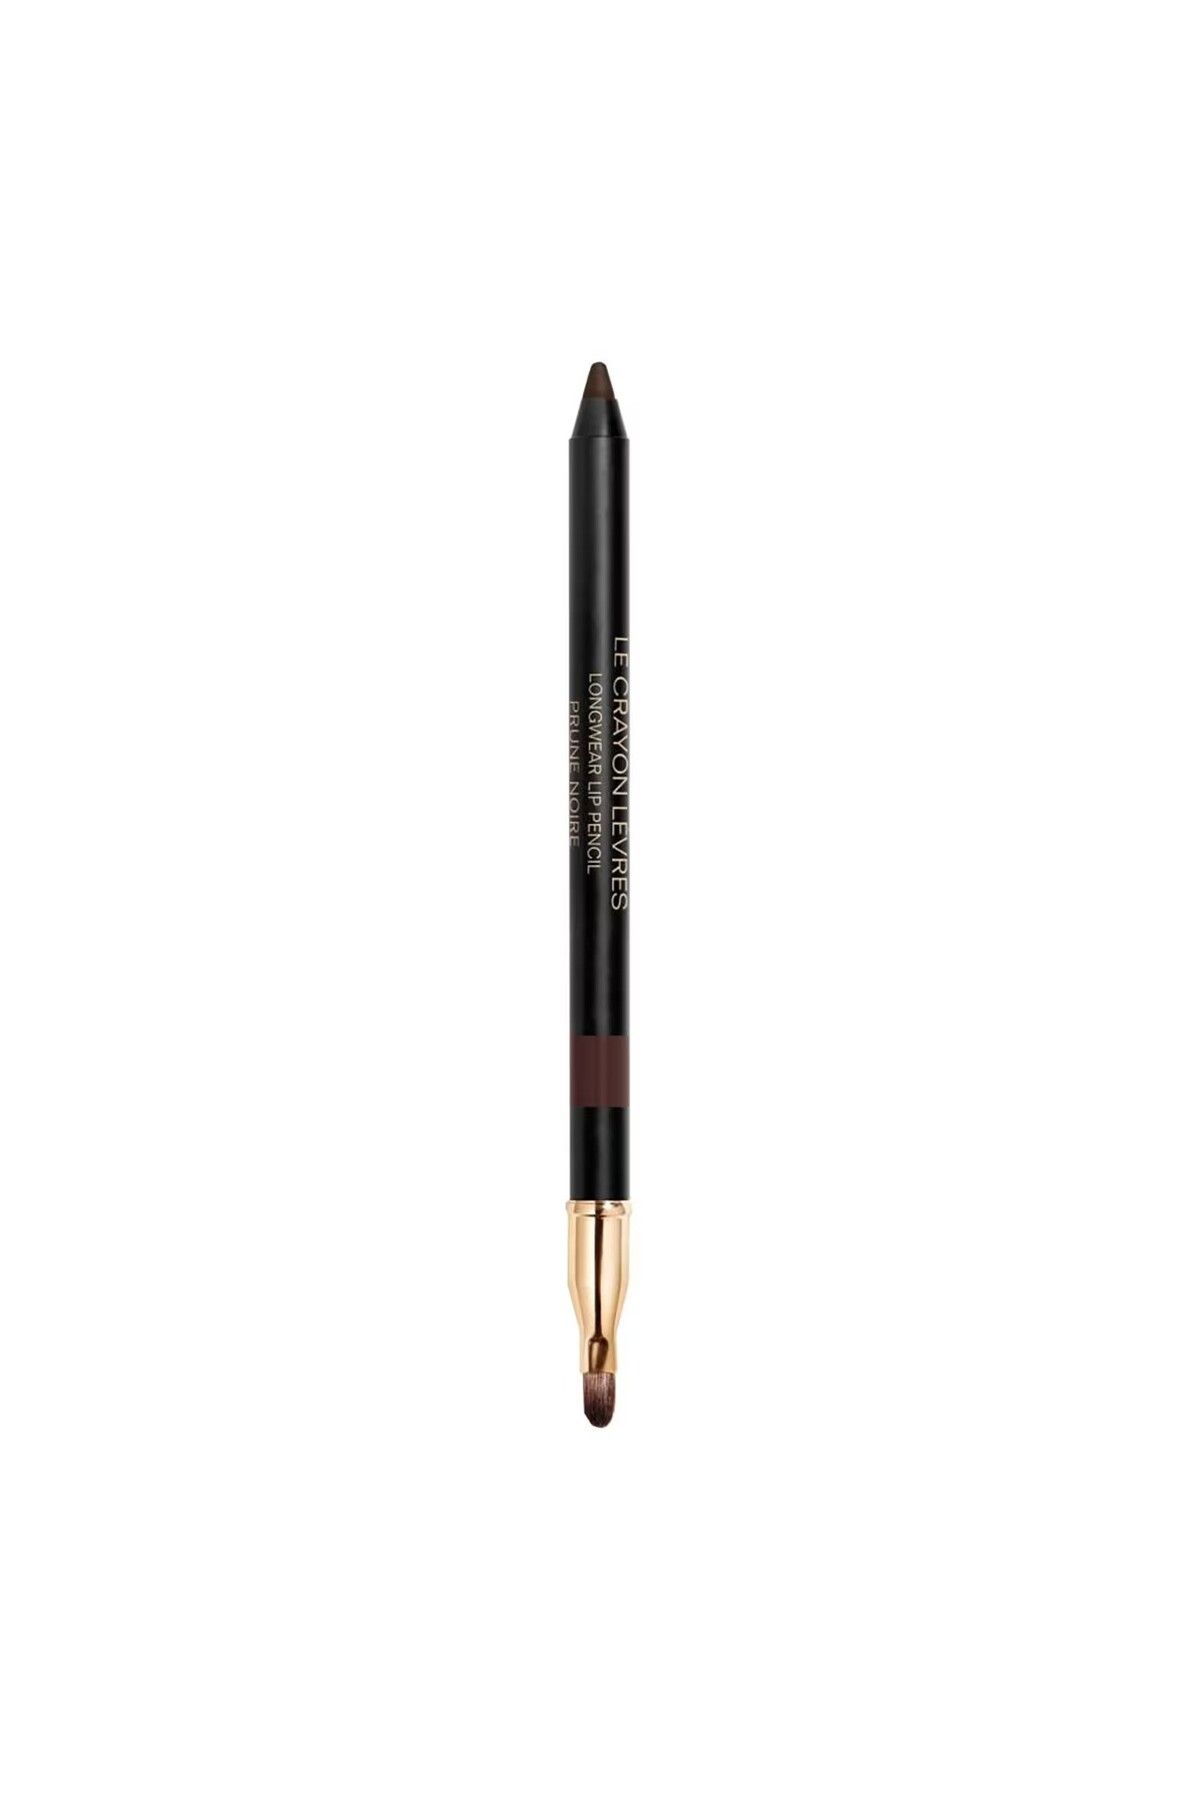 Chanel LE CRAYON LÈVRES - Gün Boyu Kalıcı Yarı Mat, Uzun Ömürlü Dudak Kalemi 1,2 gr